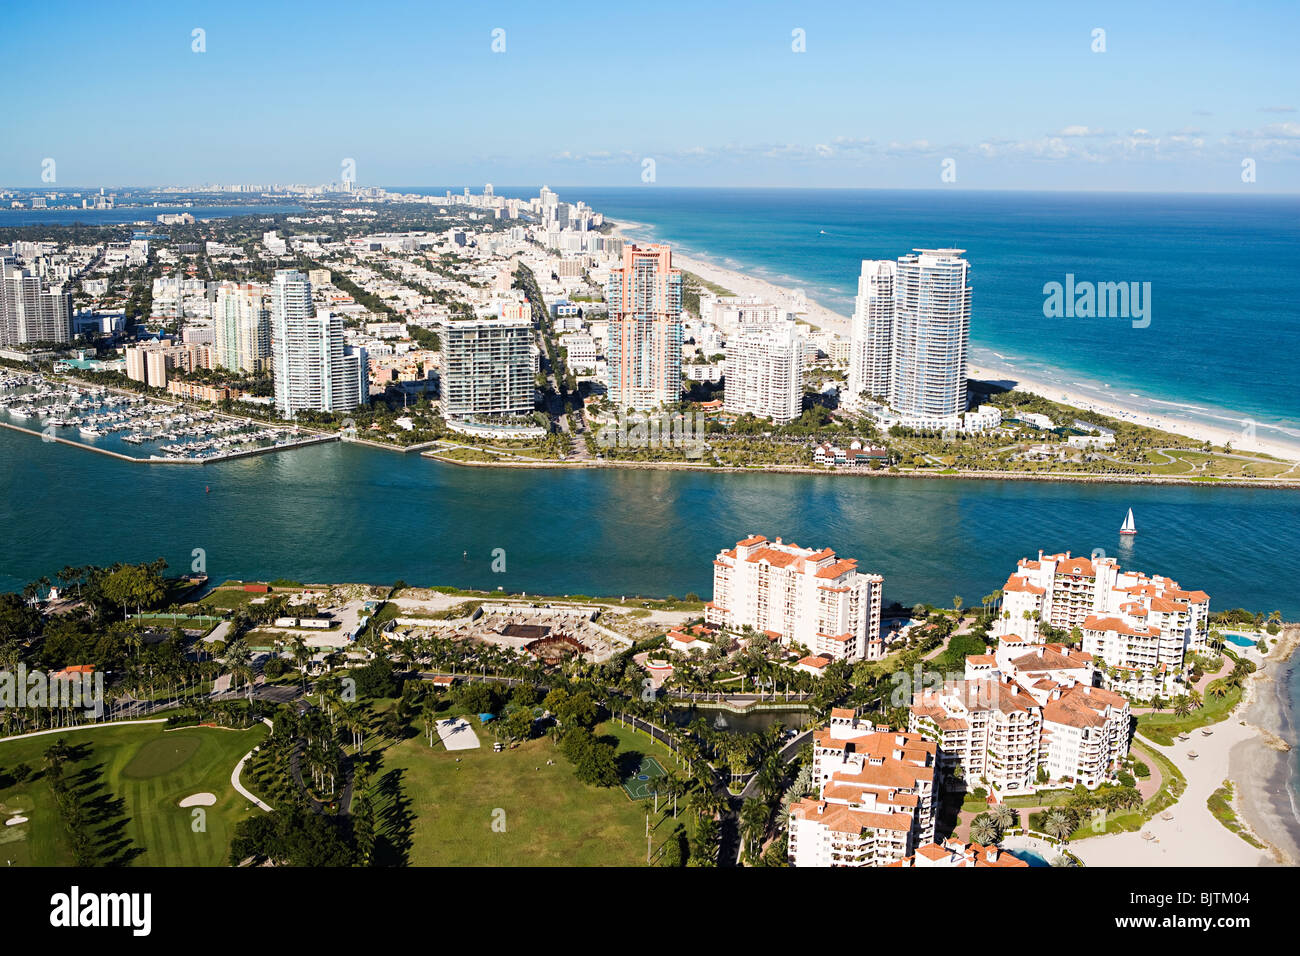 Miami beach area Stock Photo